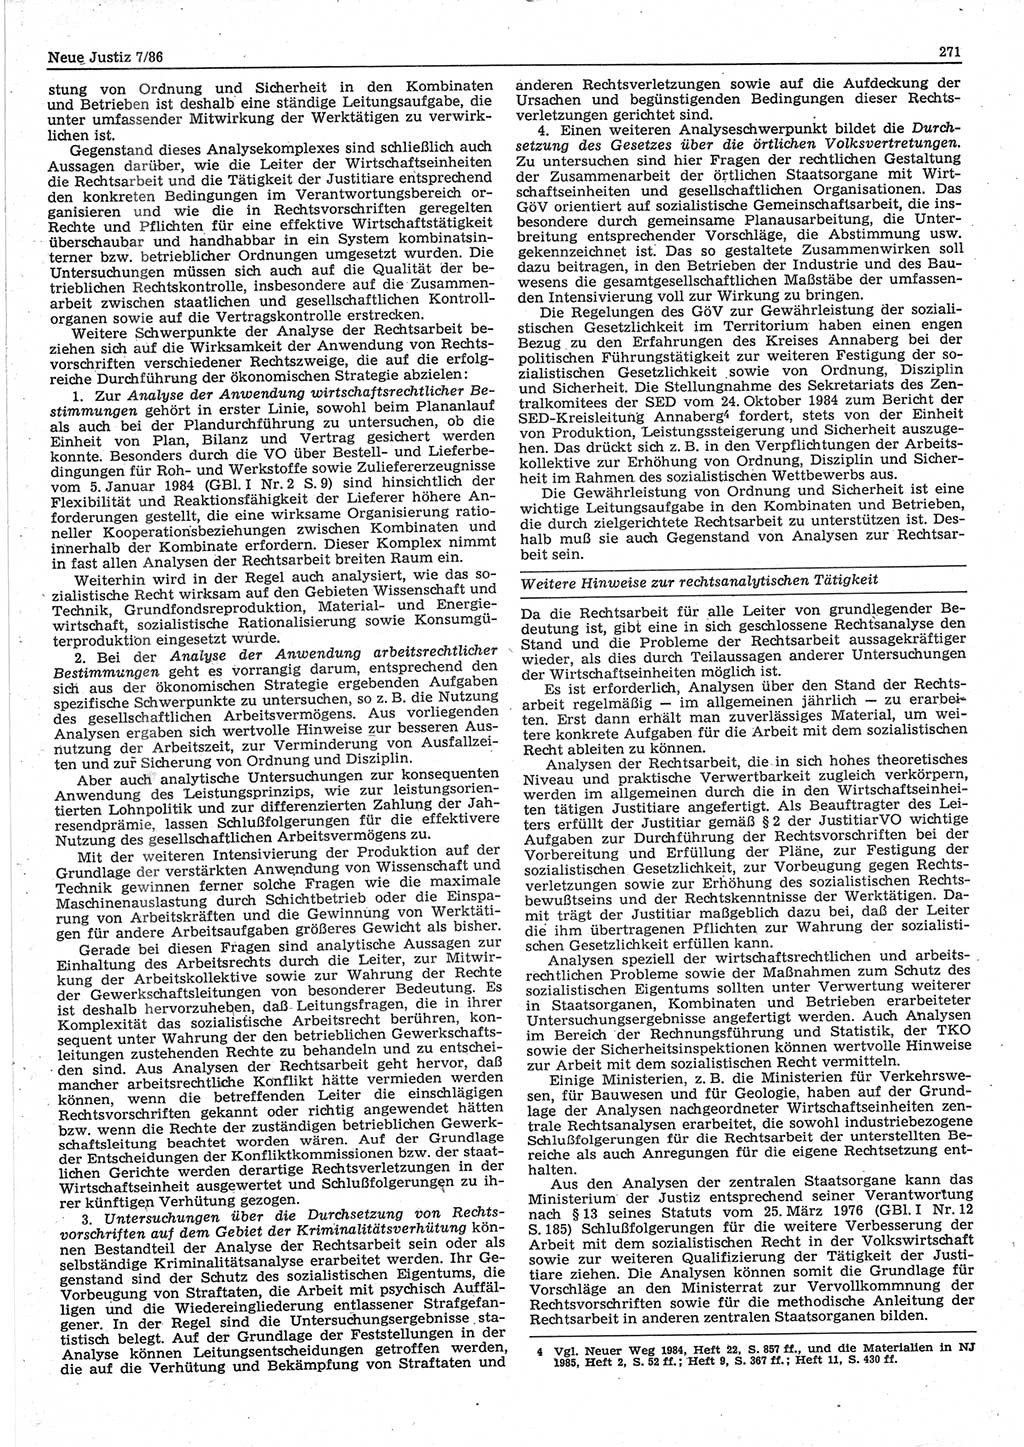 Neue Justiz (NJ), Zeitschrift für sozialistisches Recht und Gesetzlichkeit [Deutsche Demokratische Republik (DDR)], 40. Jahrgang 1986, Seite 271 (NJ DDR 1986, S. 271)